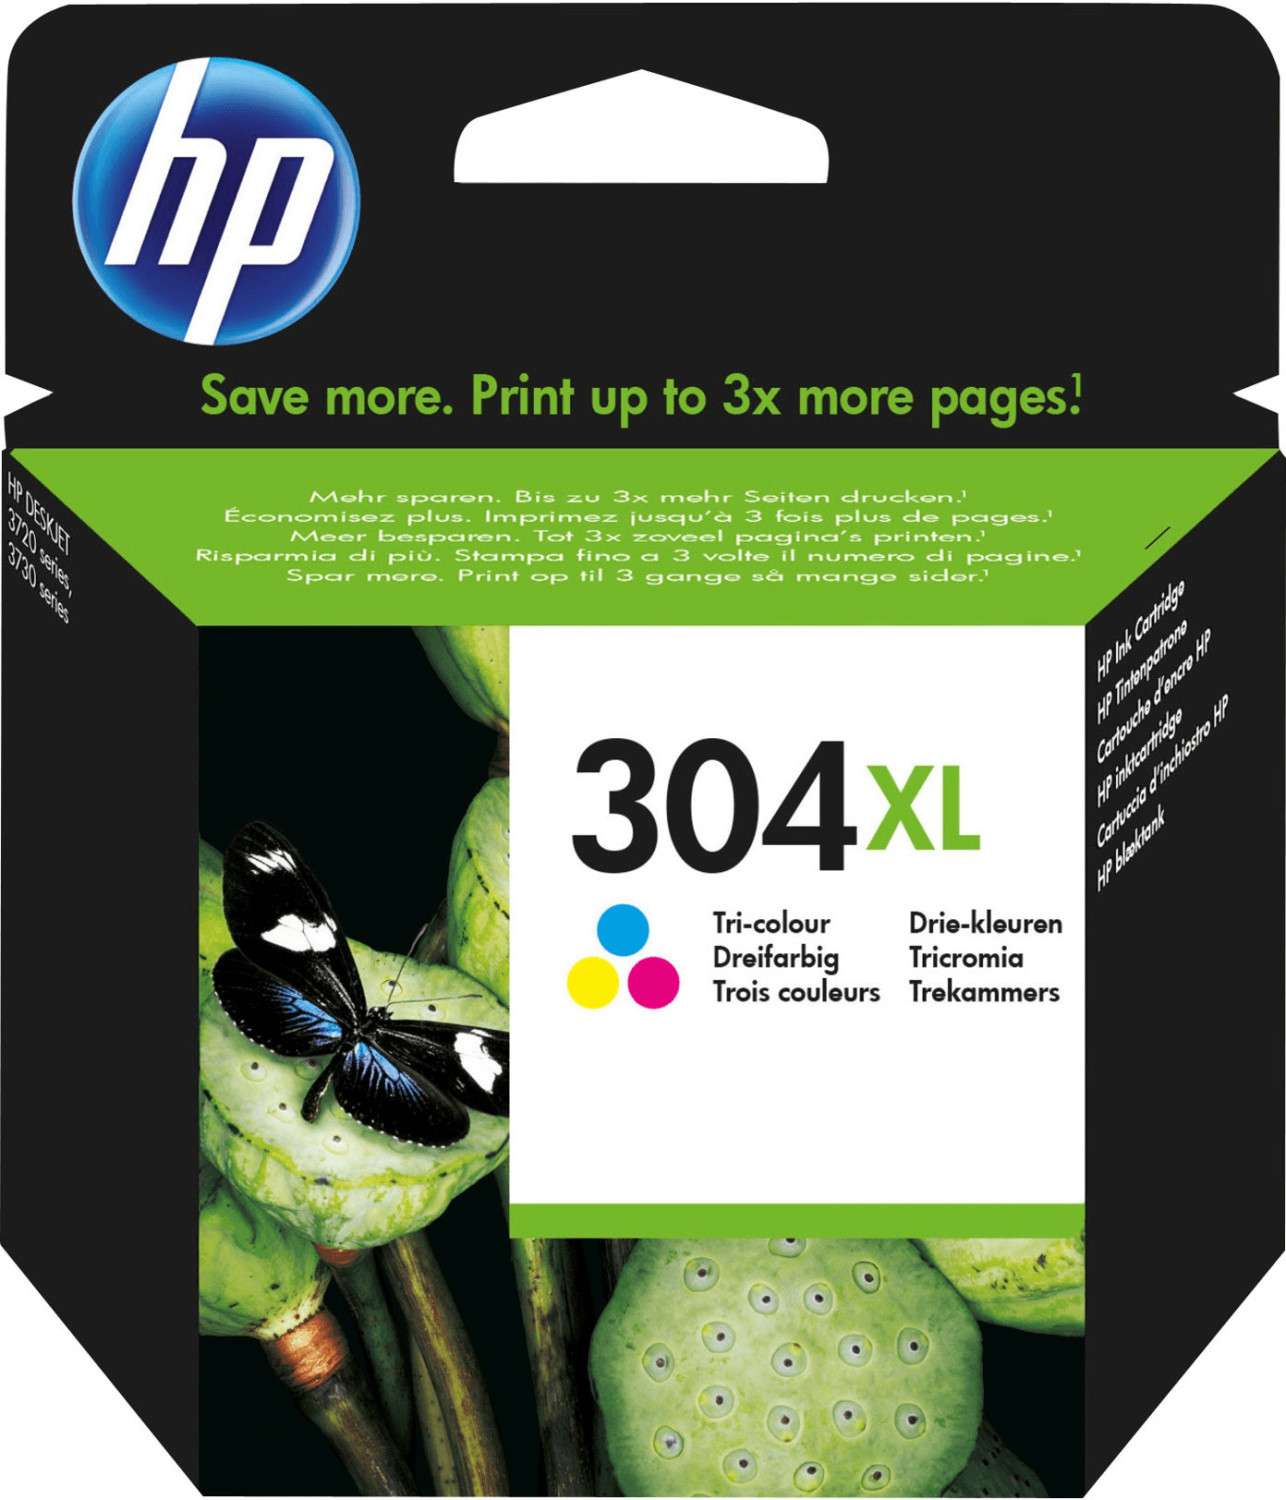 HP-304 CL XL Cartouche d'encre recyclée HP - 3 Couleurs